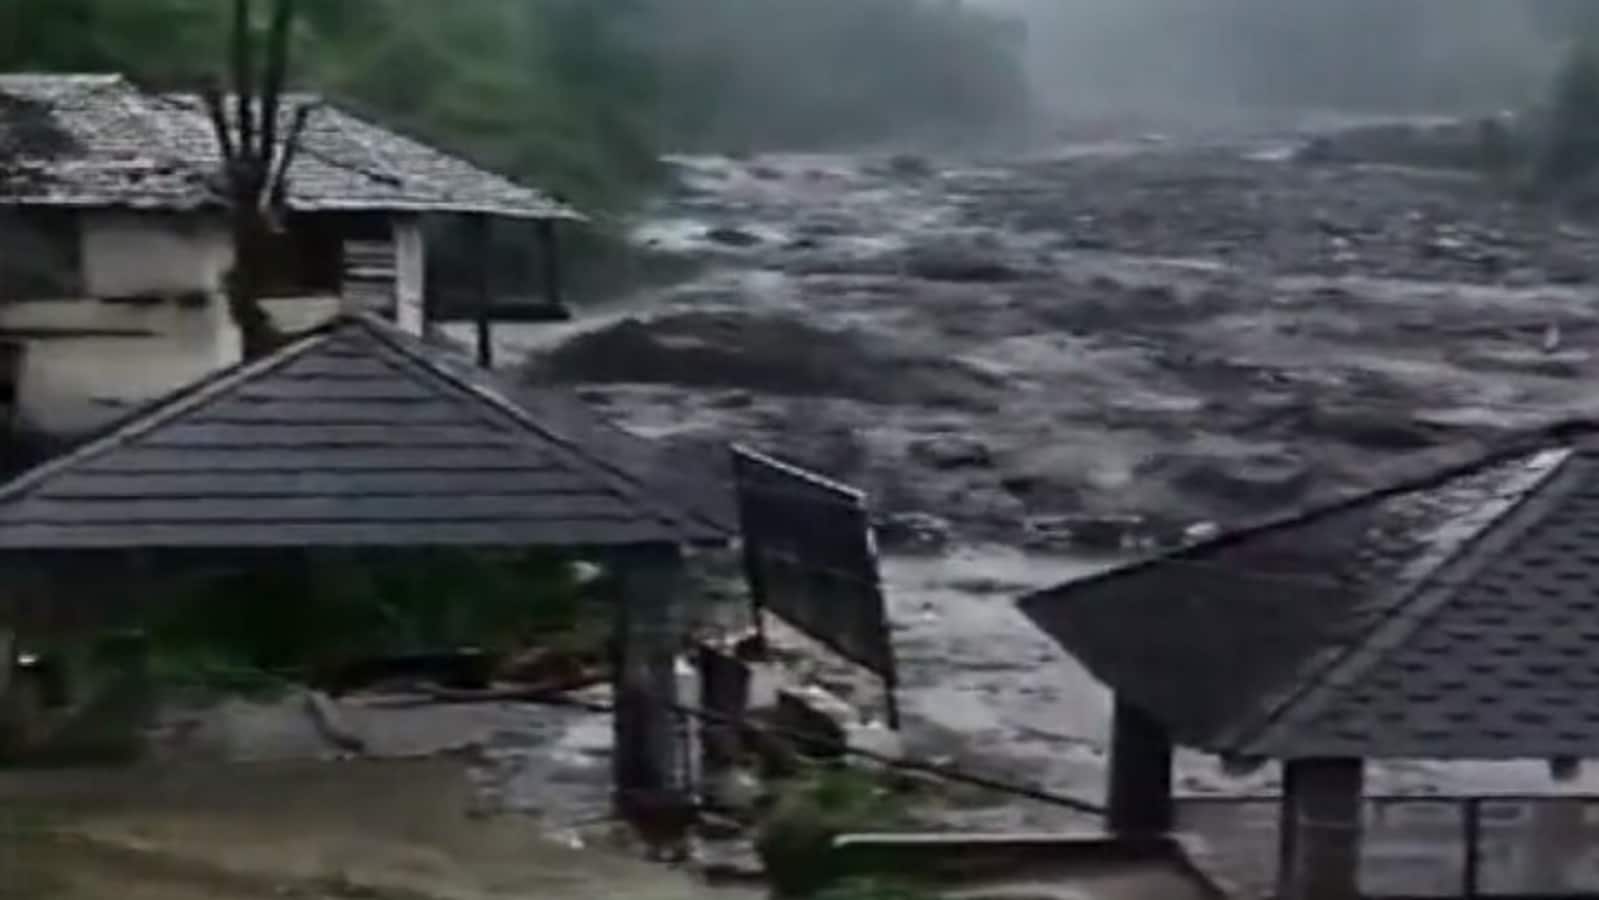 हिमाचल प्रदेश में लगातार बारिश से मंडी-कुल्लू राष्ट्रीय राजमार्ग अवरुद्ध हो गया है